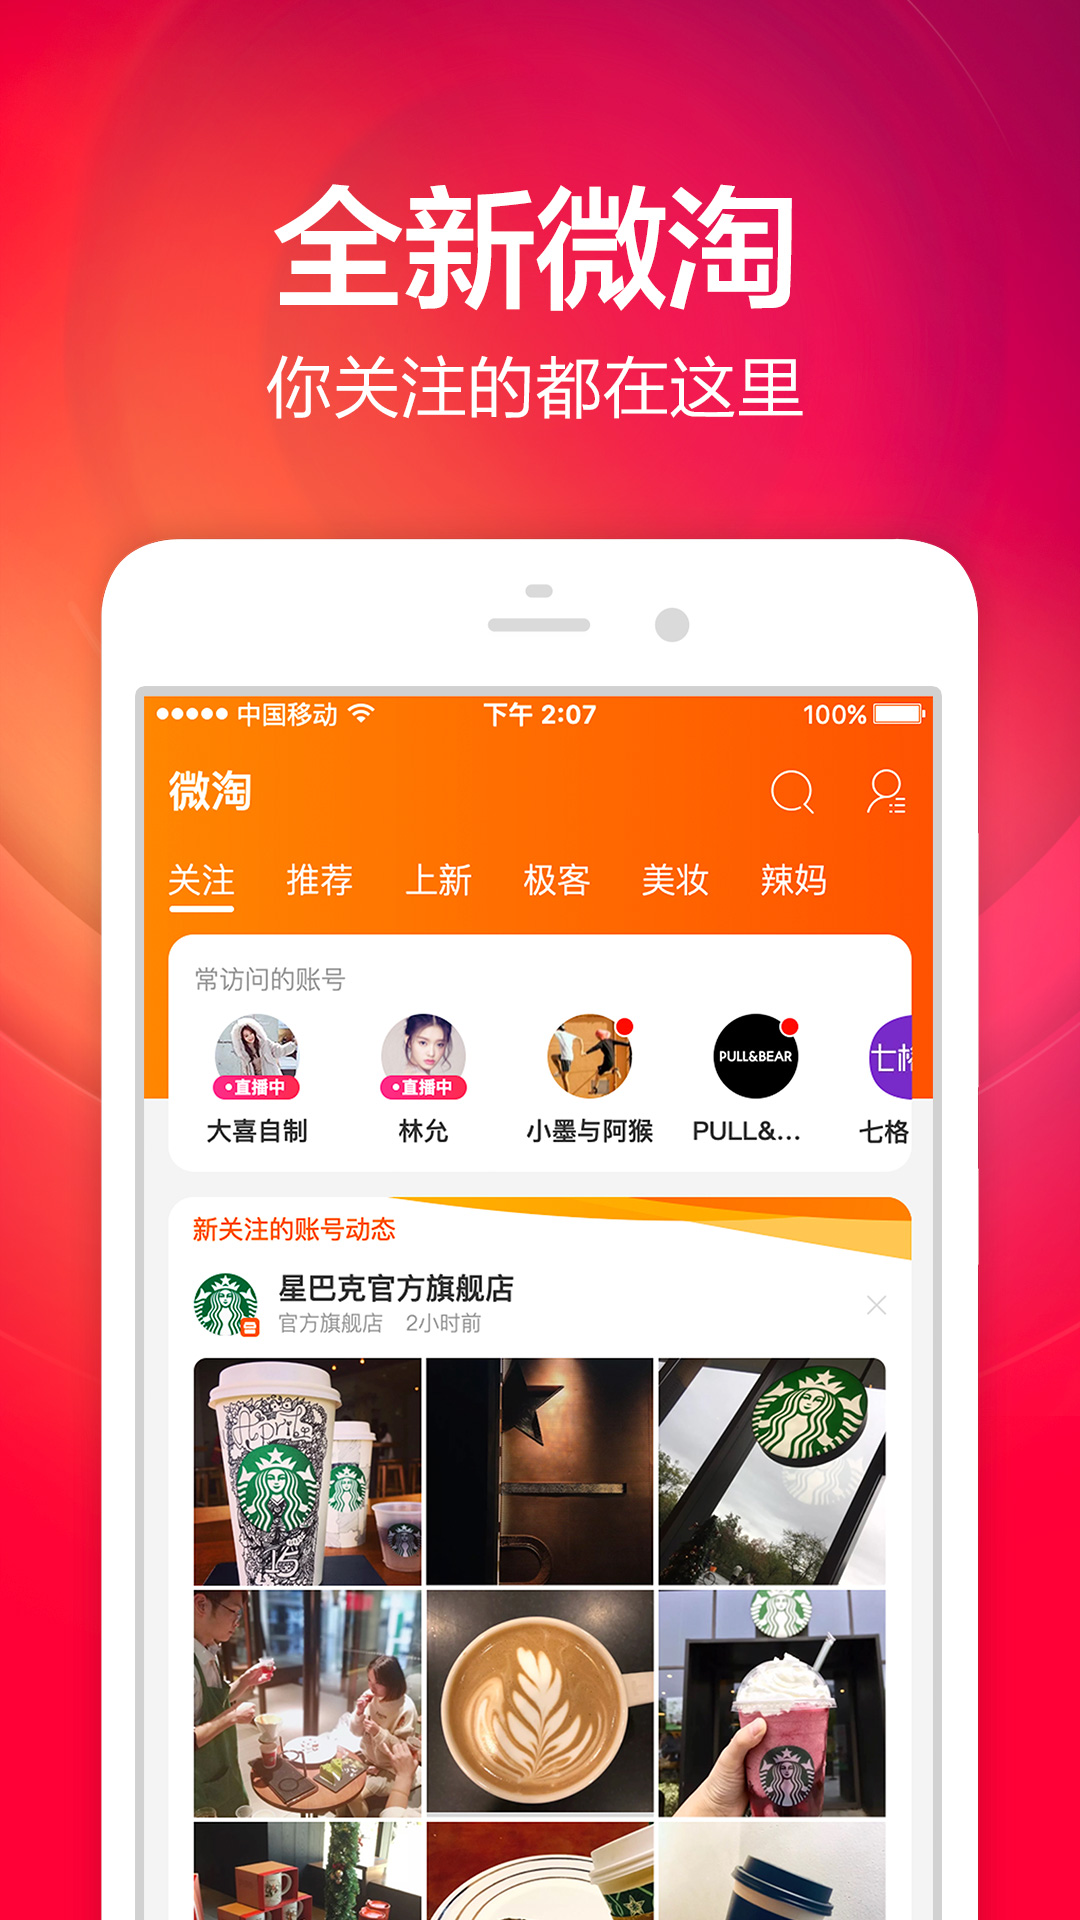 诚淘联盟app下载,诚淘联盟购物app手机版 v10.1.0 最新版 - 浏览器家园